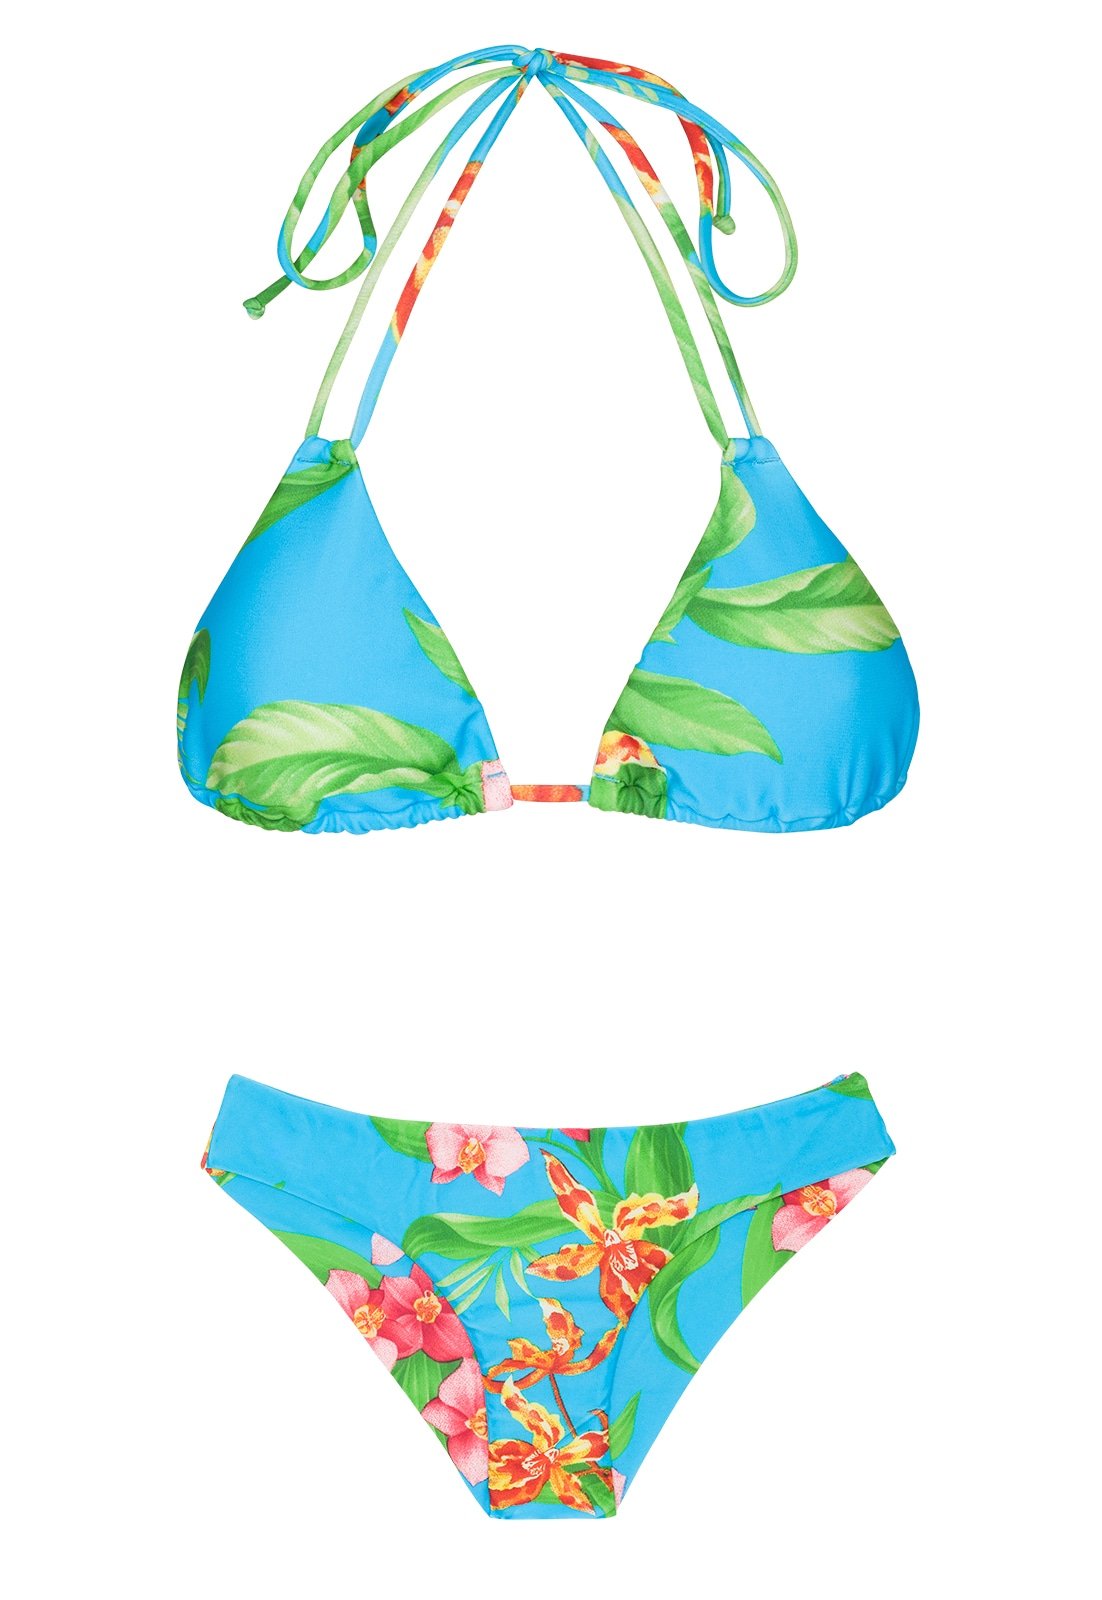 Rio de Sol Double strap Blue Floral Triangle Bikini - Aloha Tri Cheeky